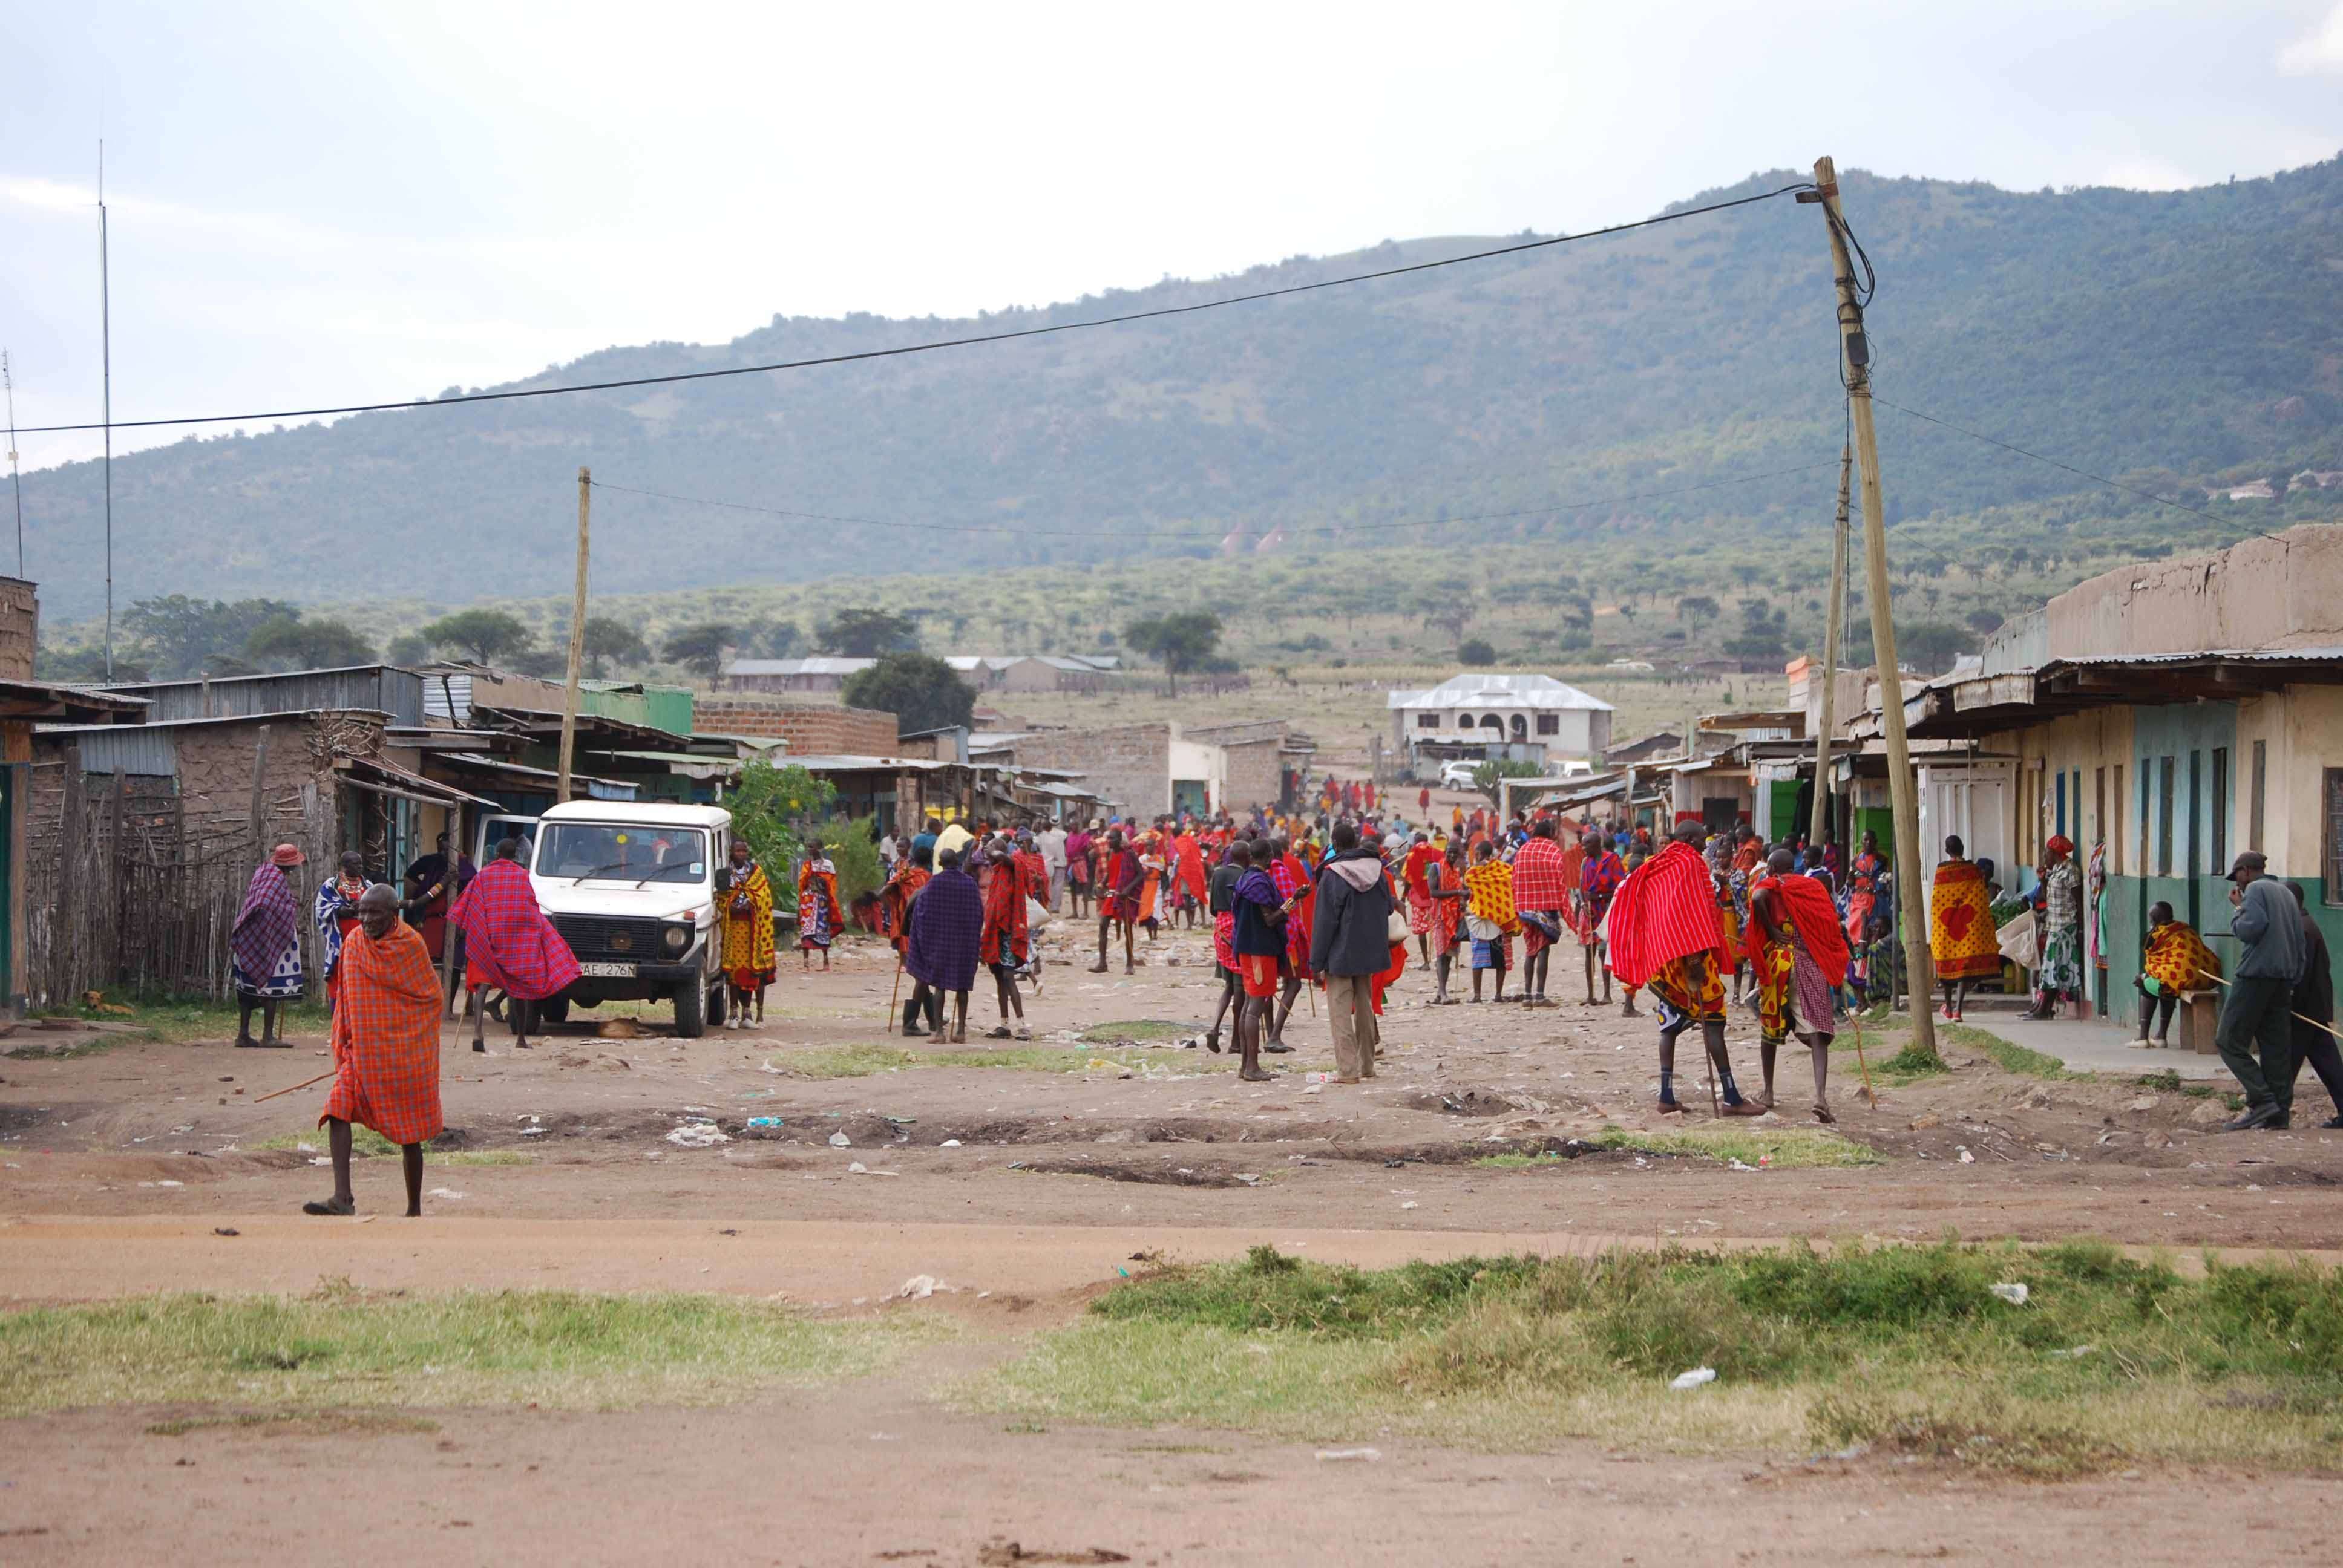 Regreso al Mara - Kenia - Blogs de Kenia - El mercado masai, un intento fallido de ver el cruce y algunas mariposas (18)